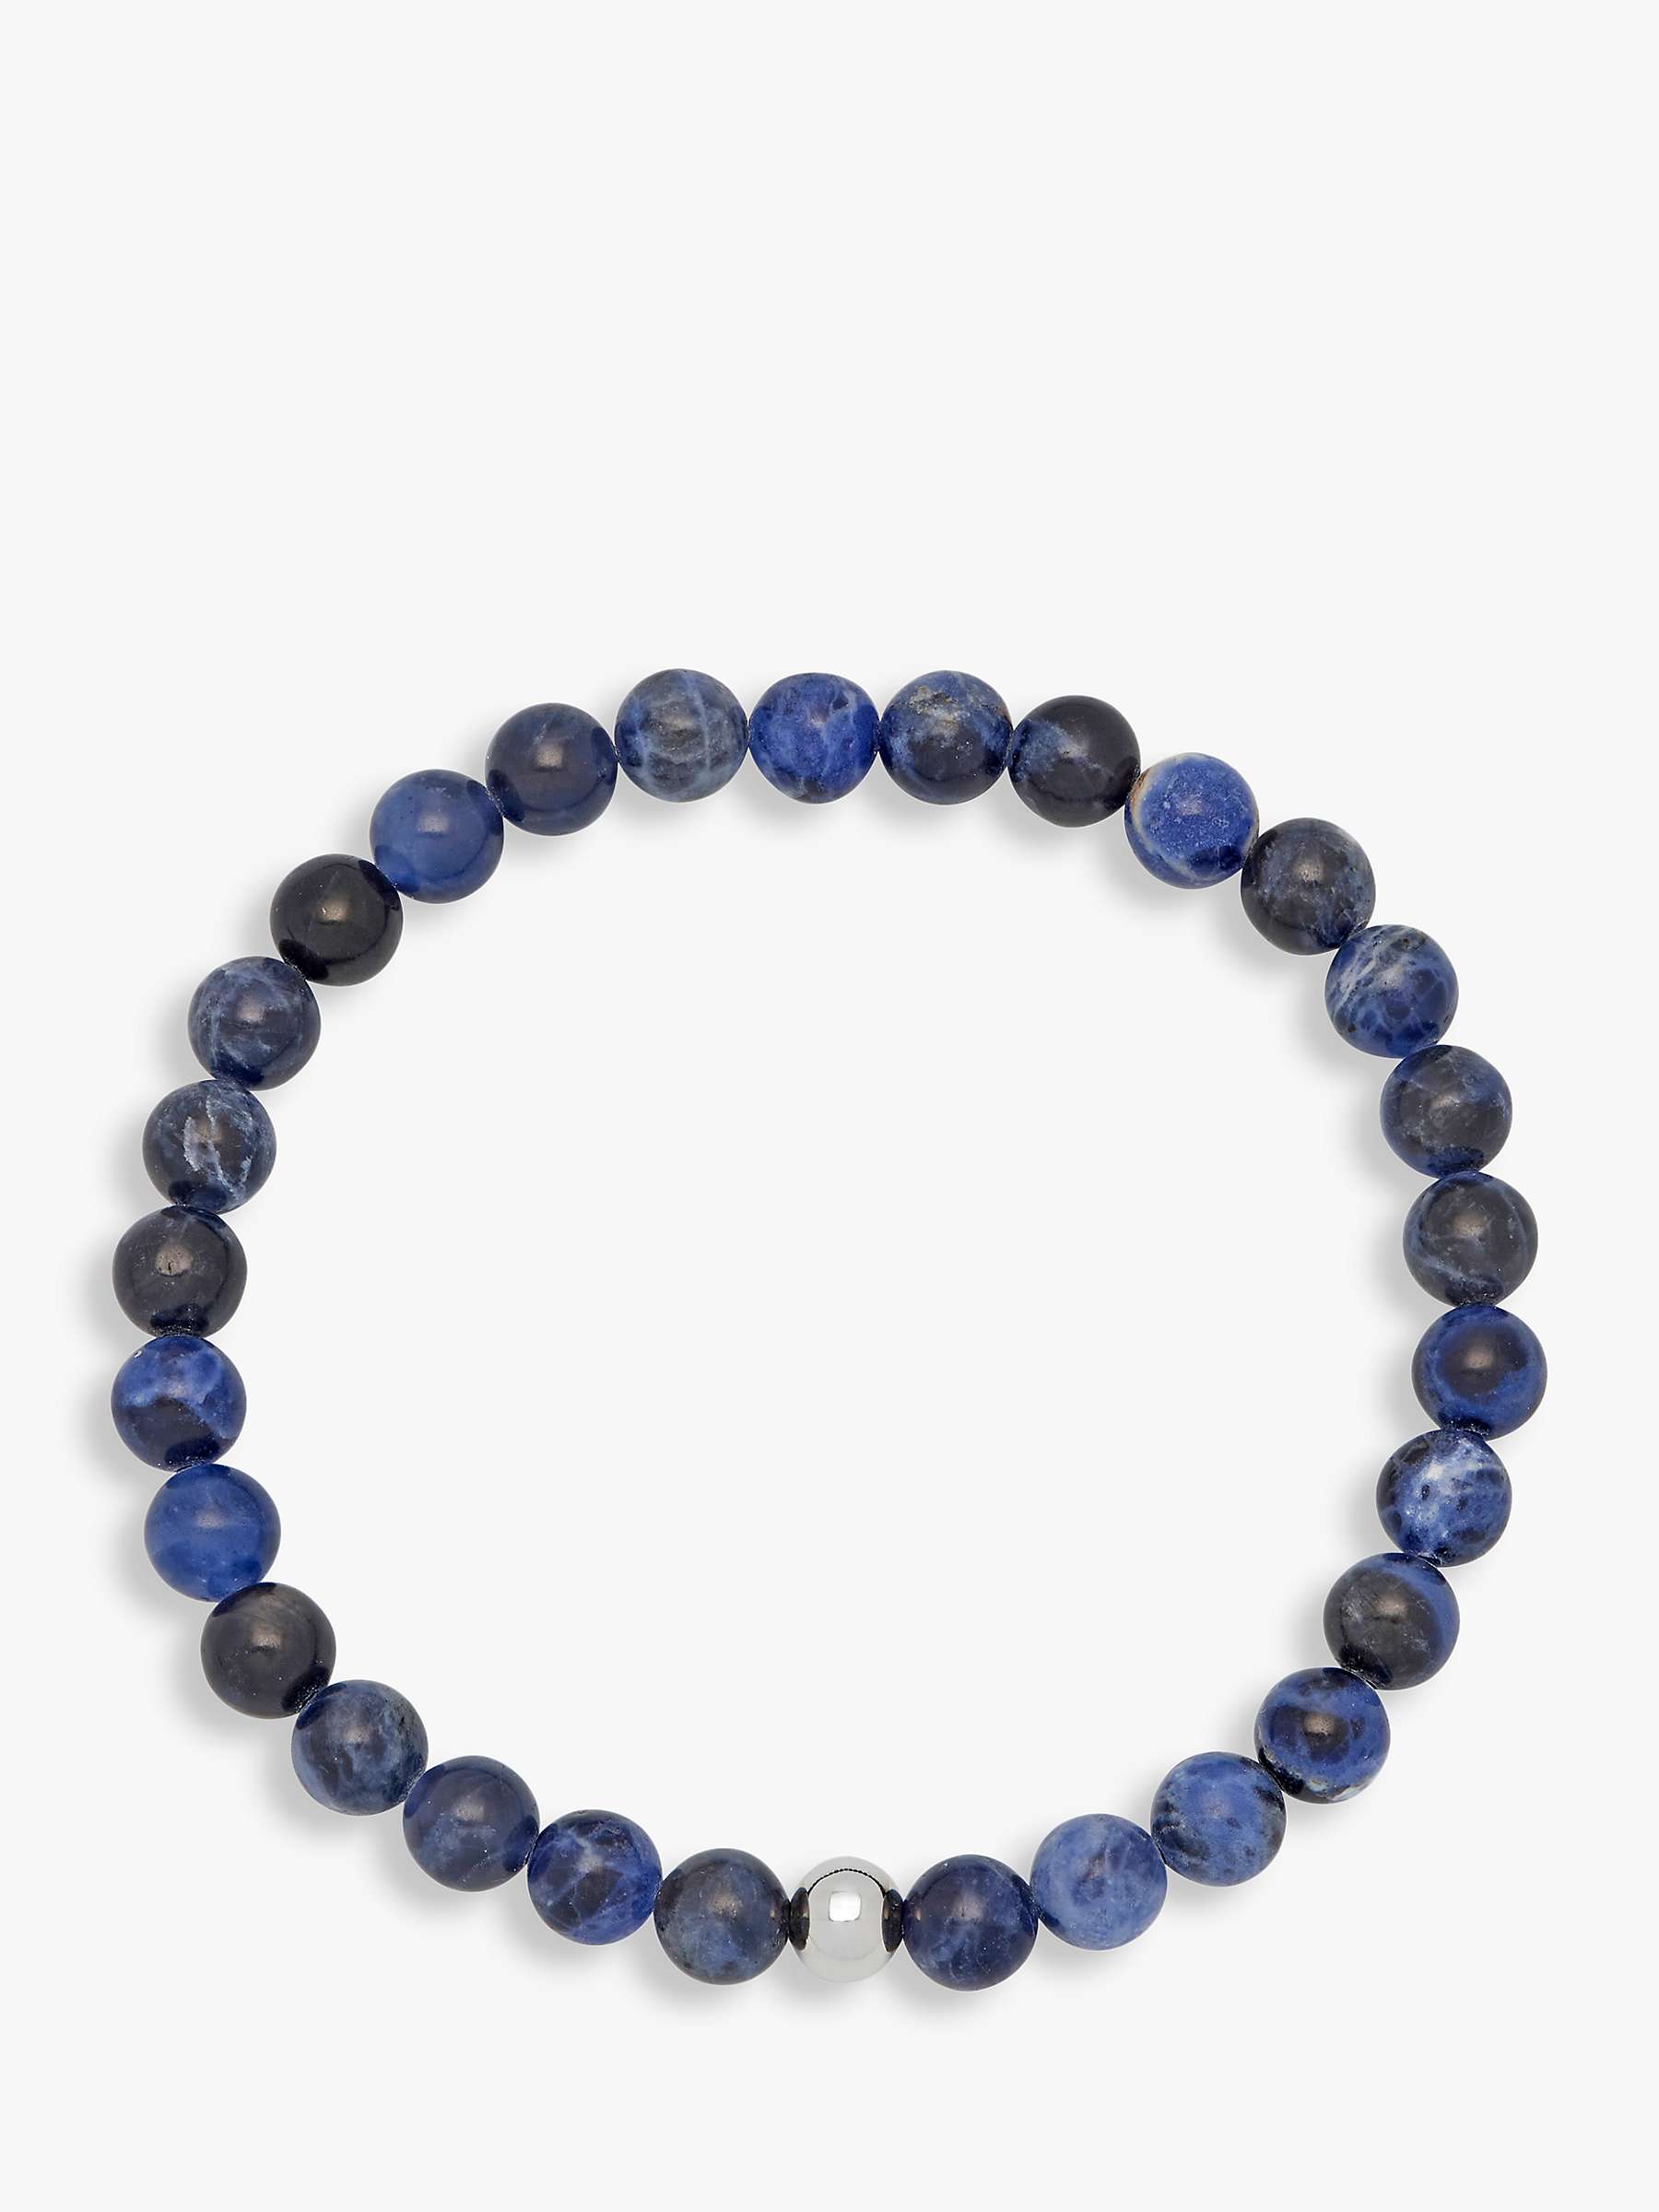 Buy BARTLETT LONDON Men's Lapis Lazuli Beaded Bracelet, Blue Online at johnlewis.com